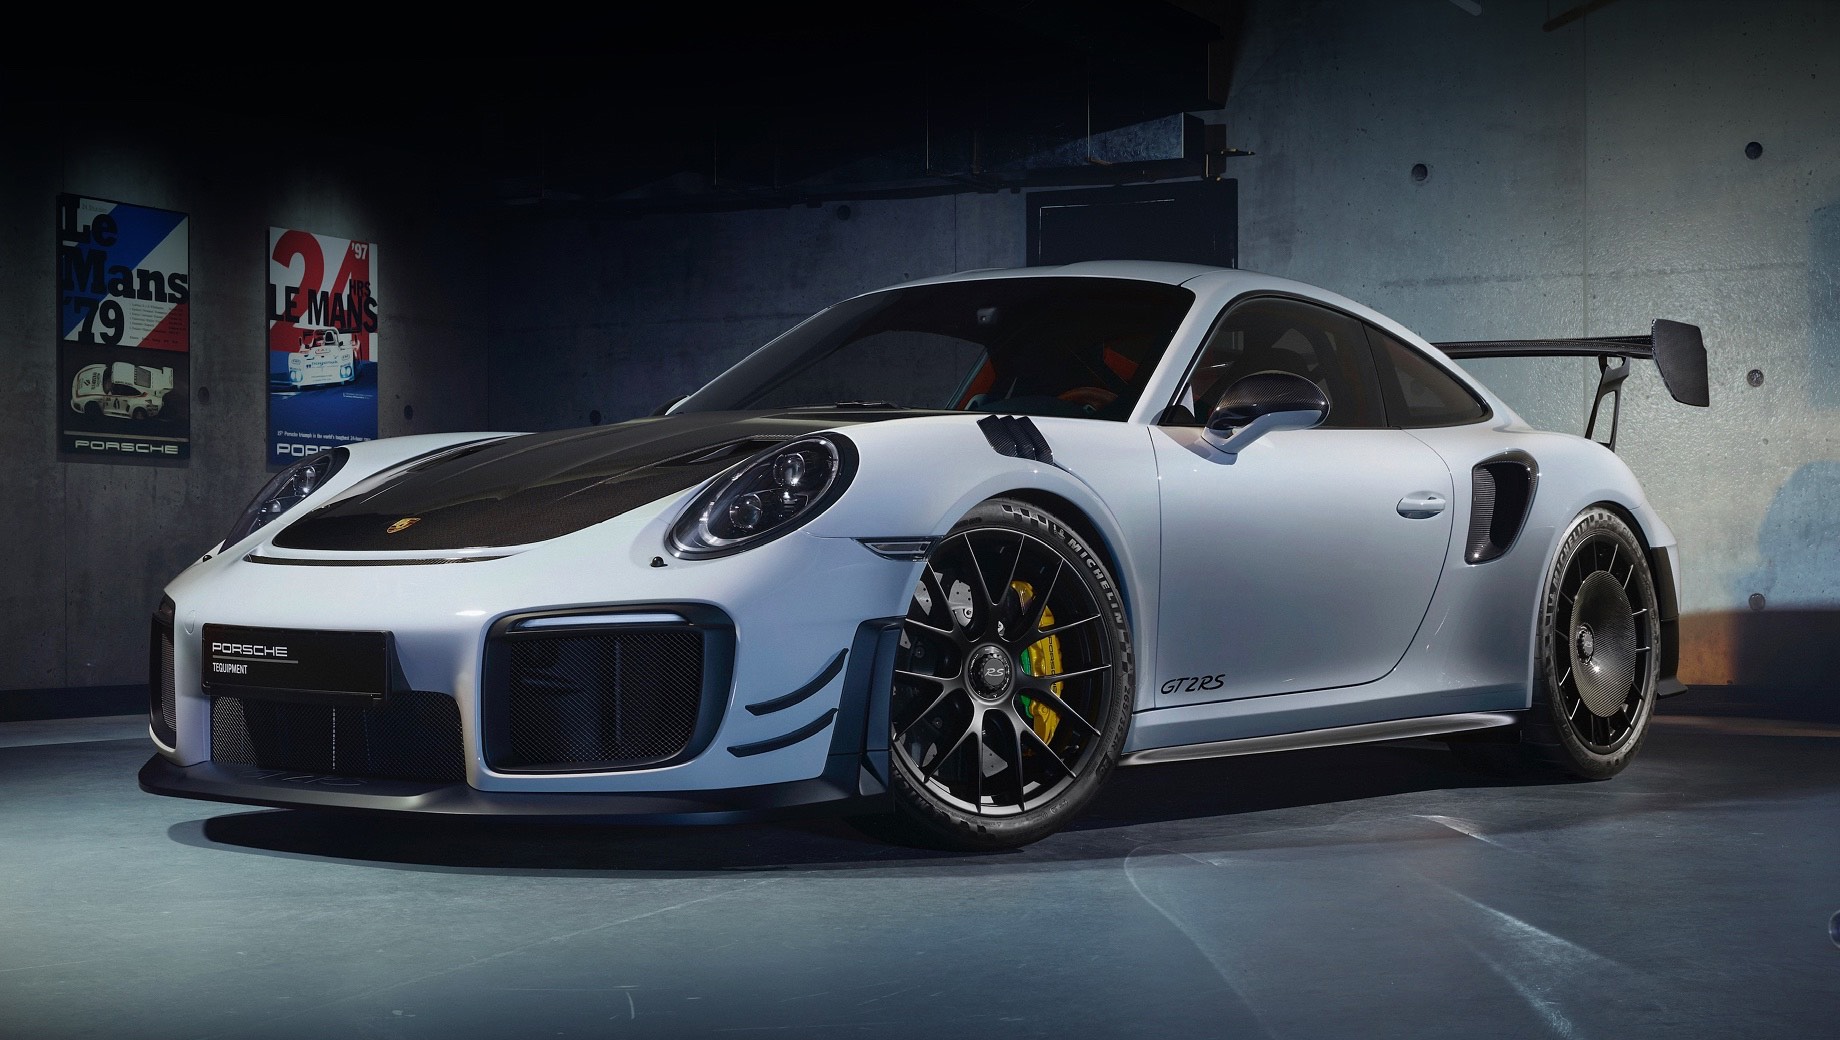 Porsche sonderwunsch. Компания Porsche начала применять индивидуальный подход к своим клиентам ещё в 50-х годах прошлого века. Сейчас, по данным фирмы, около 25% новых 911-х посещают мастерскую Porsche Exclusive Manufaktur. Там же будут работать над машинами по программе Porsche Sonderwunsch.